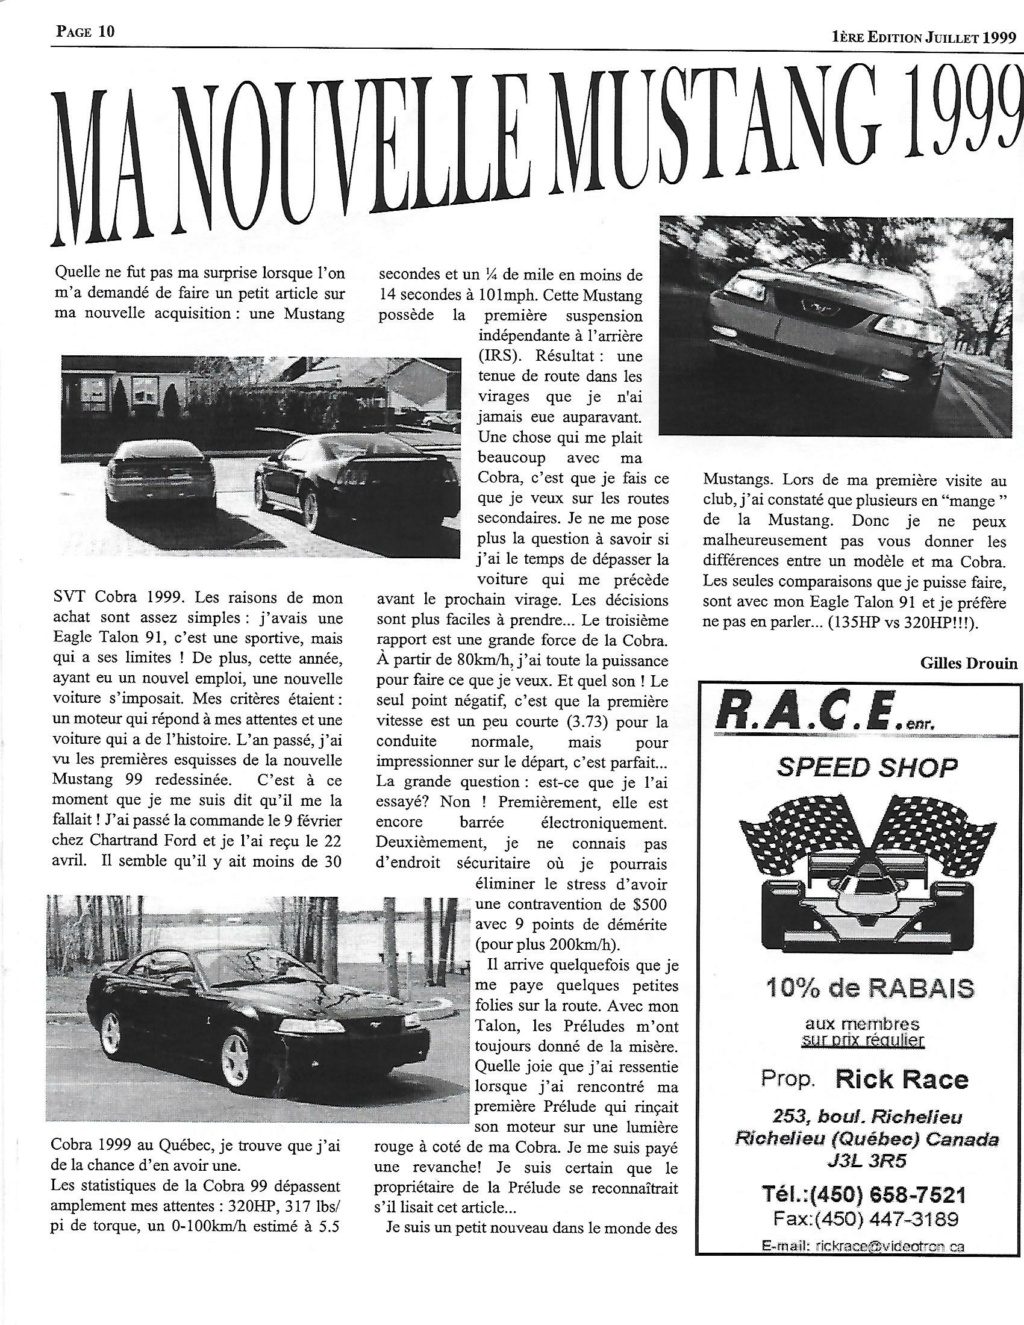 Montréal Mustang dans le temps! 1981 à aujourd'hui (Histoire en photos) - Page 9 1999-040